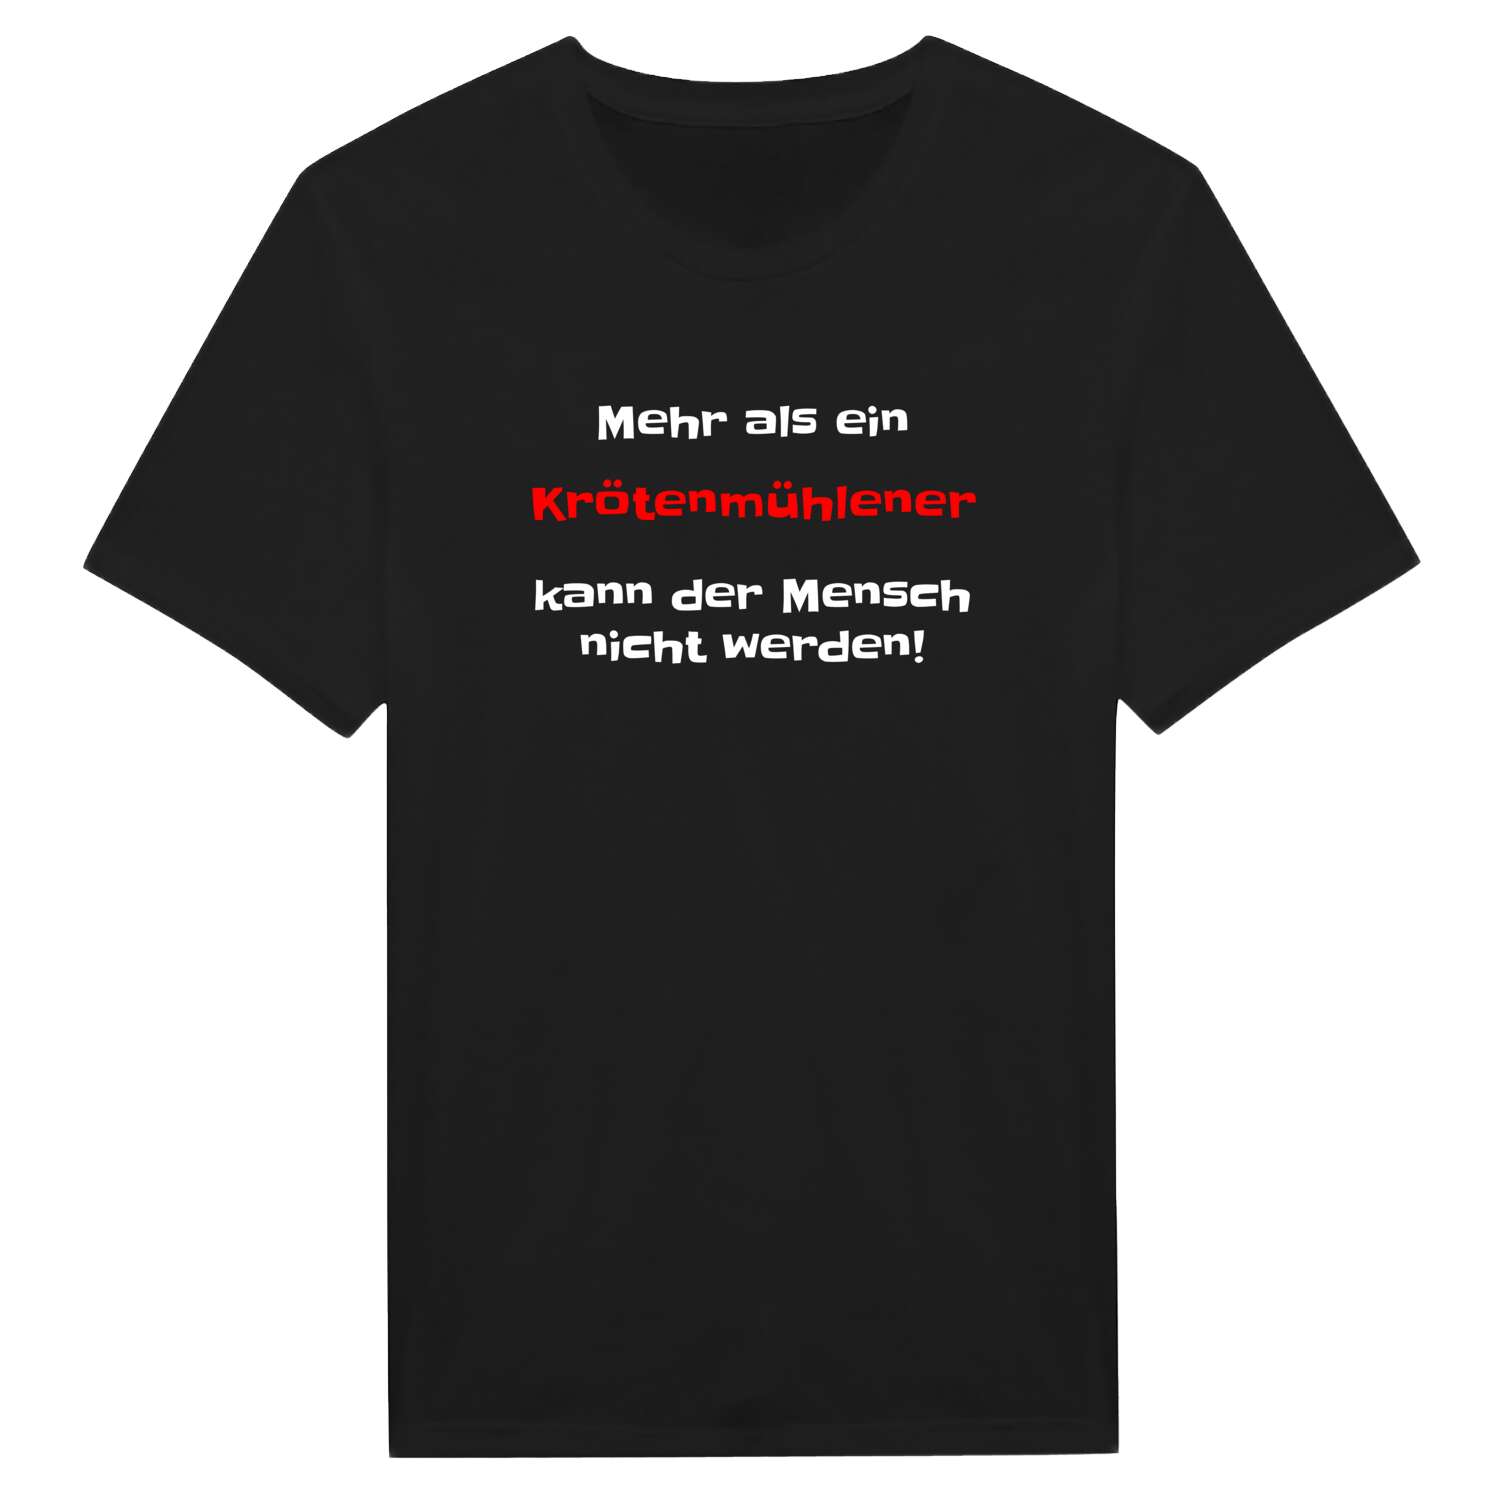 Krötenmühle T-Shirt »Mehr als ein«